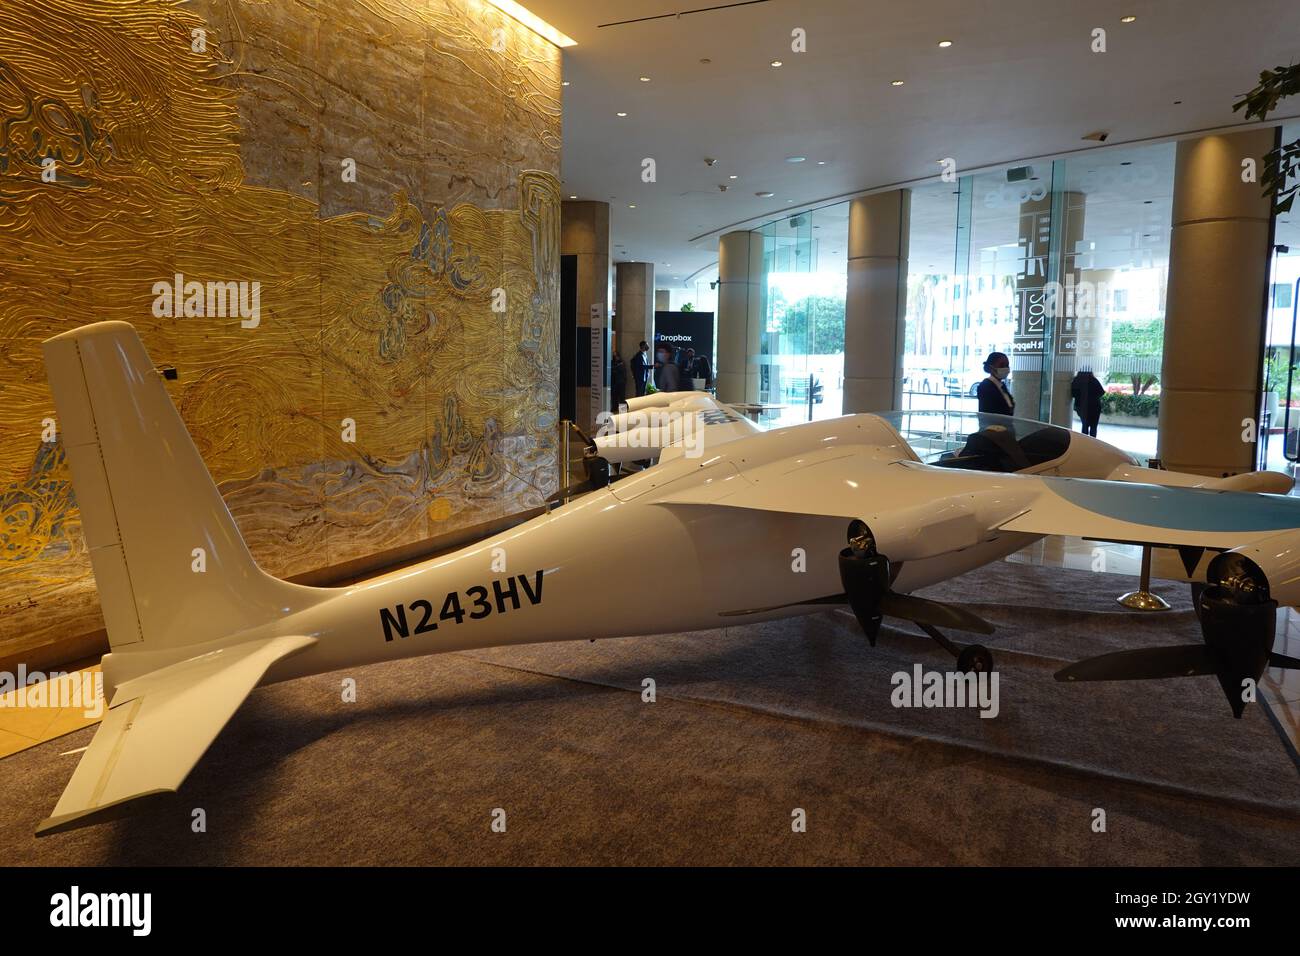 Kitty Hawk pilote moins d'avion dans le hall de l'hôtel Hilton Beverly Hills Banque D'Images